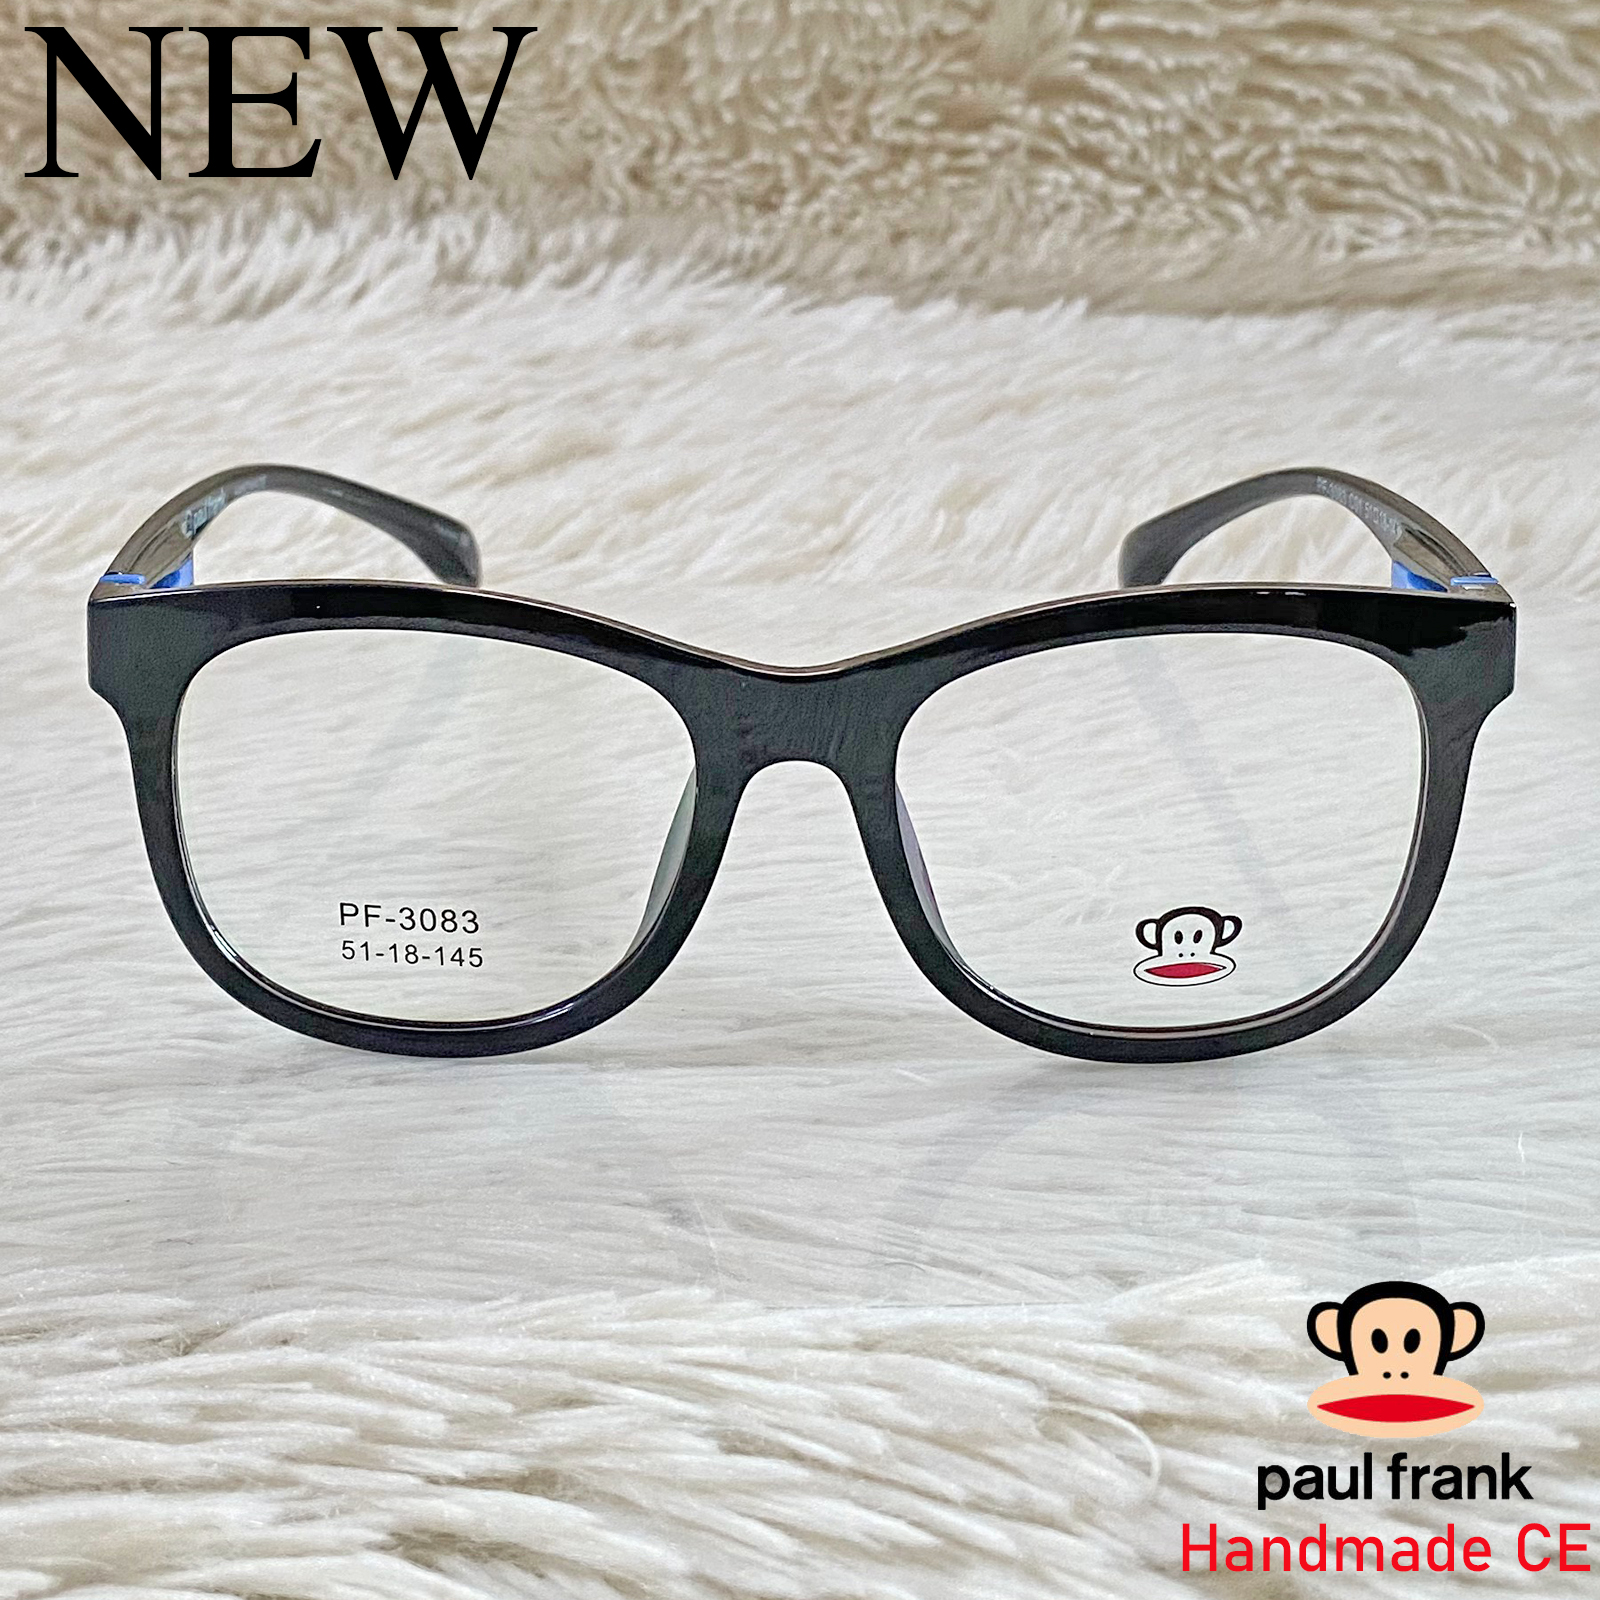 Handmade แว่นตาสำหรับตัดเลนส์ สายตา กรอบแว่นตา ชาย หญิง Fashion รุ่น 3083 สีดำ กรอบเต็ม ทรงรี ขาข้อต่อ วัสดุ TR 90 รับตัดเลนส์ทุกชนิด